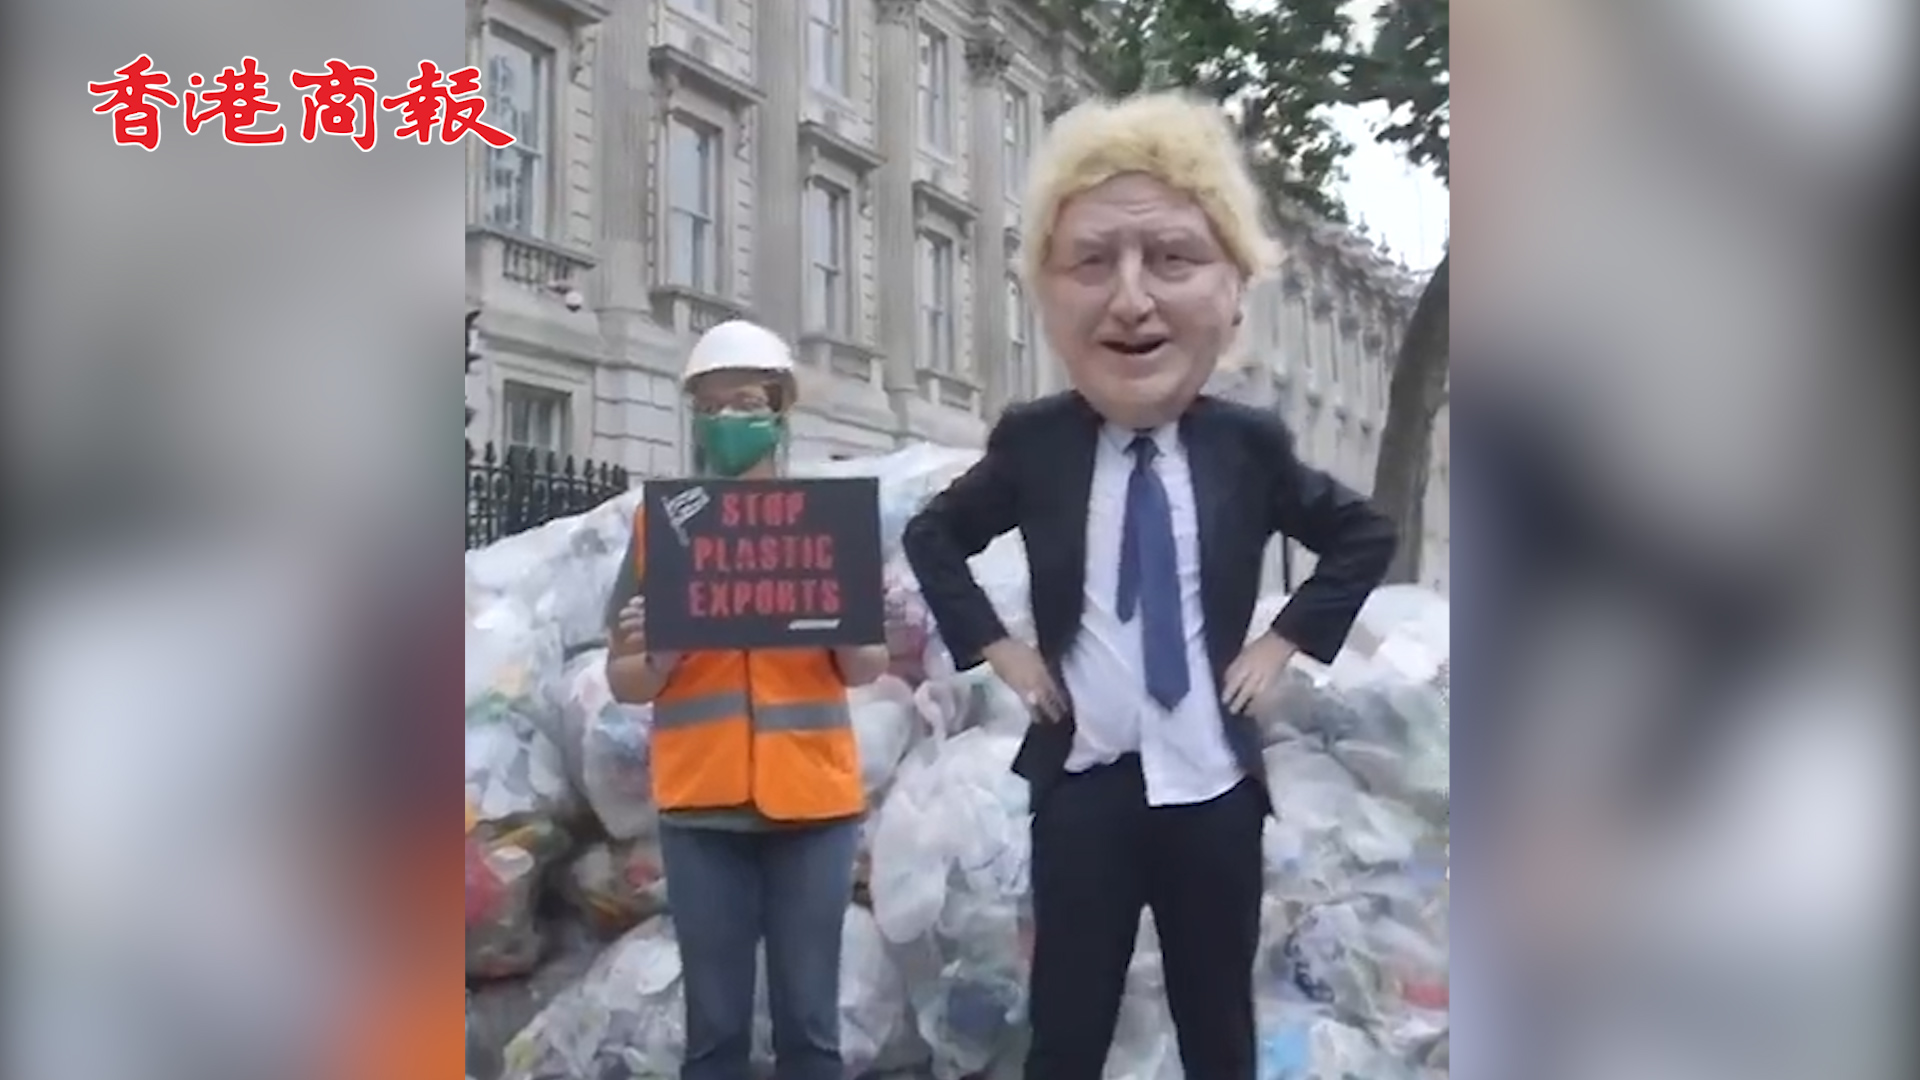 有片丨環保人士在英首相府門外傾倒625公斤垃圾 抗議廢料出口